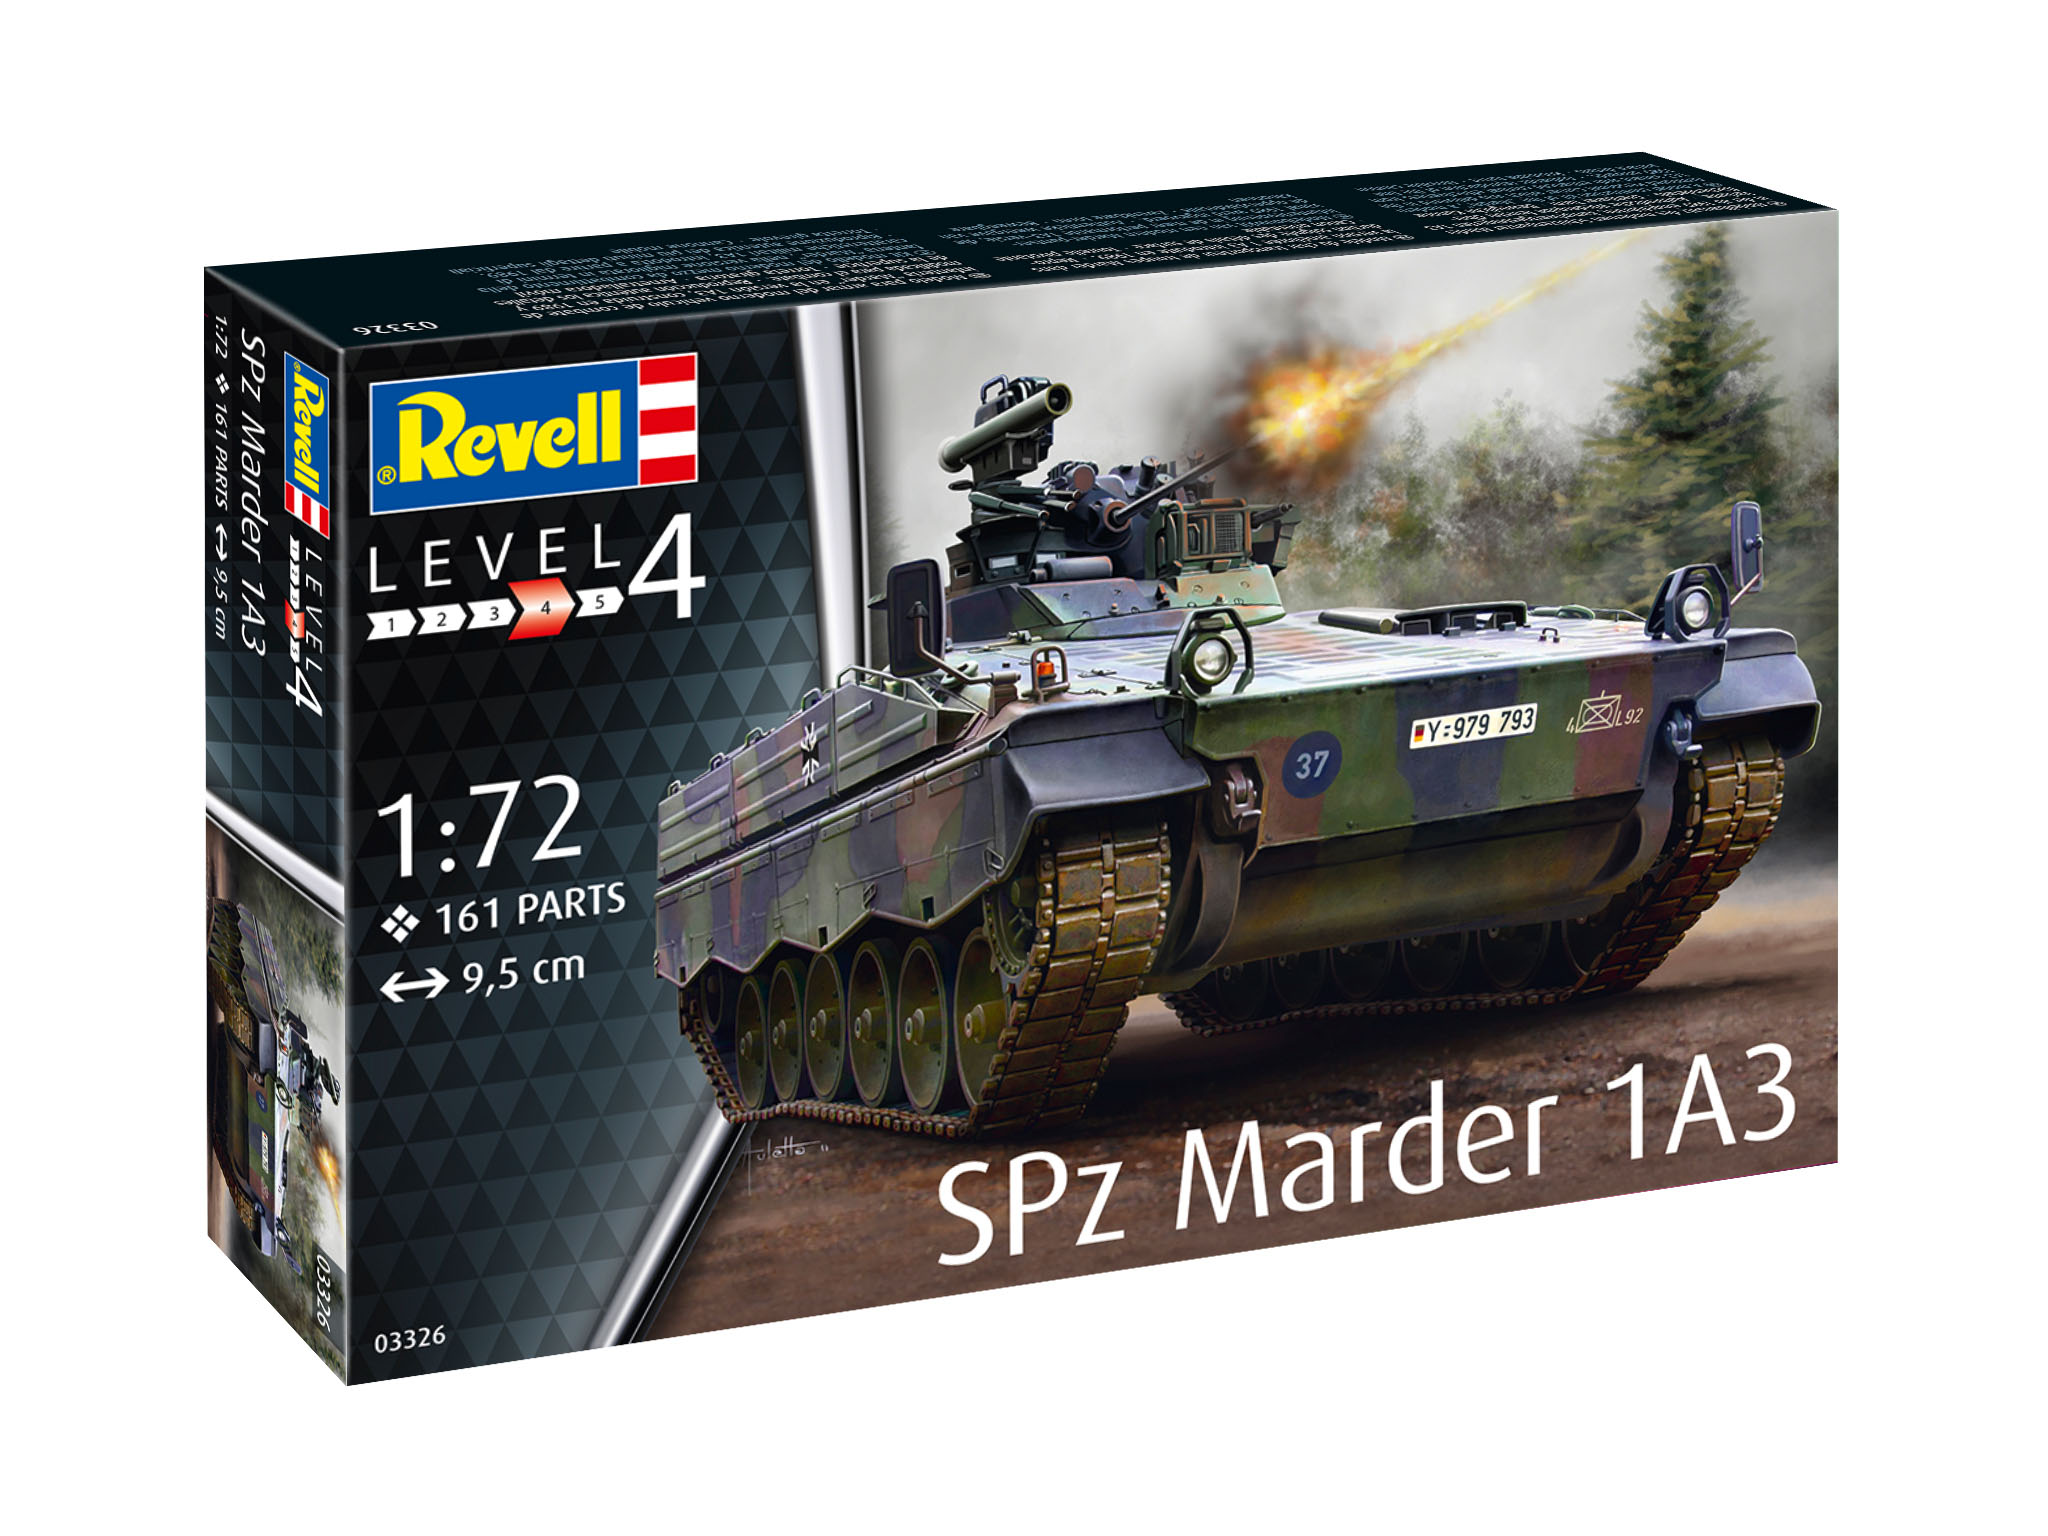 Revell Spz Marder 1A3 in 1:72 bouwpakket